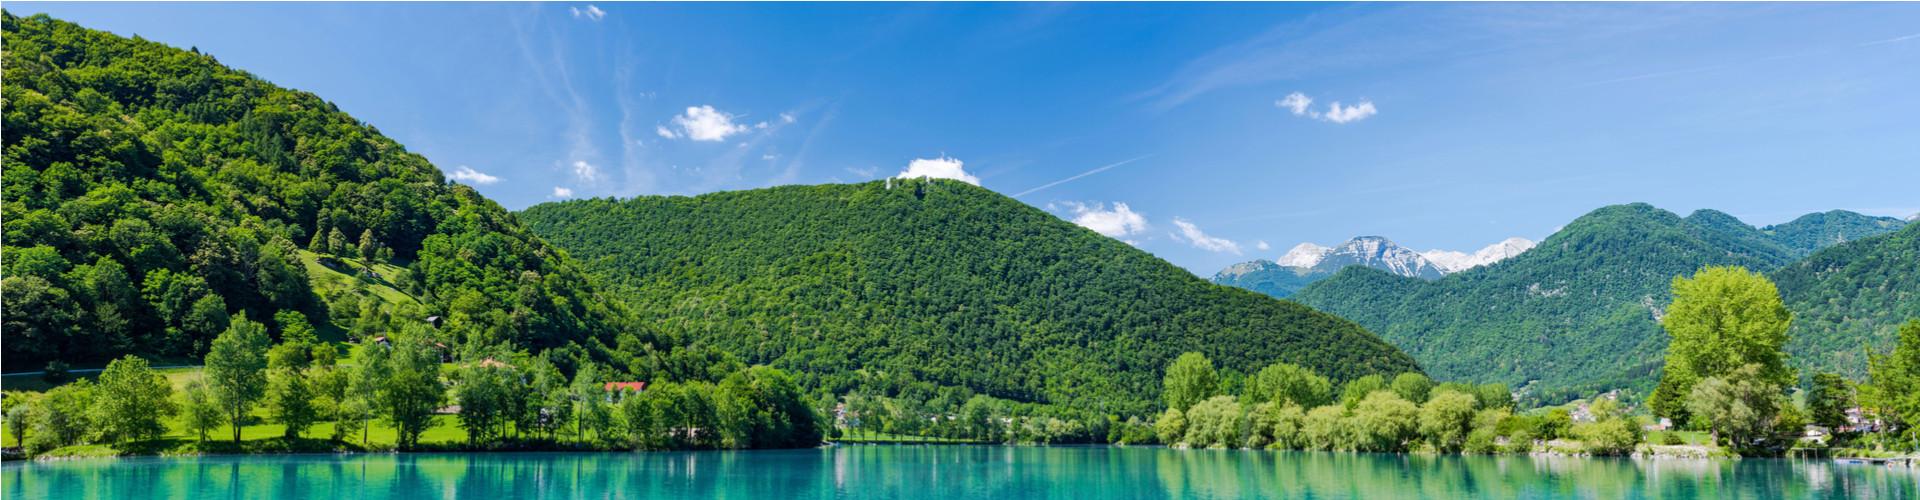 Campings in Slovenië: de leukste kampeerplaatsen